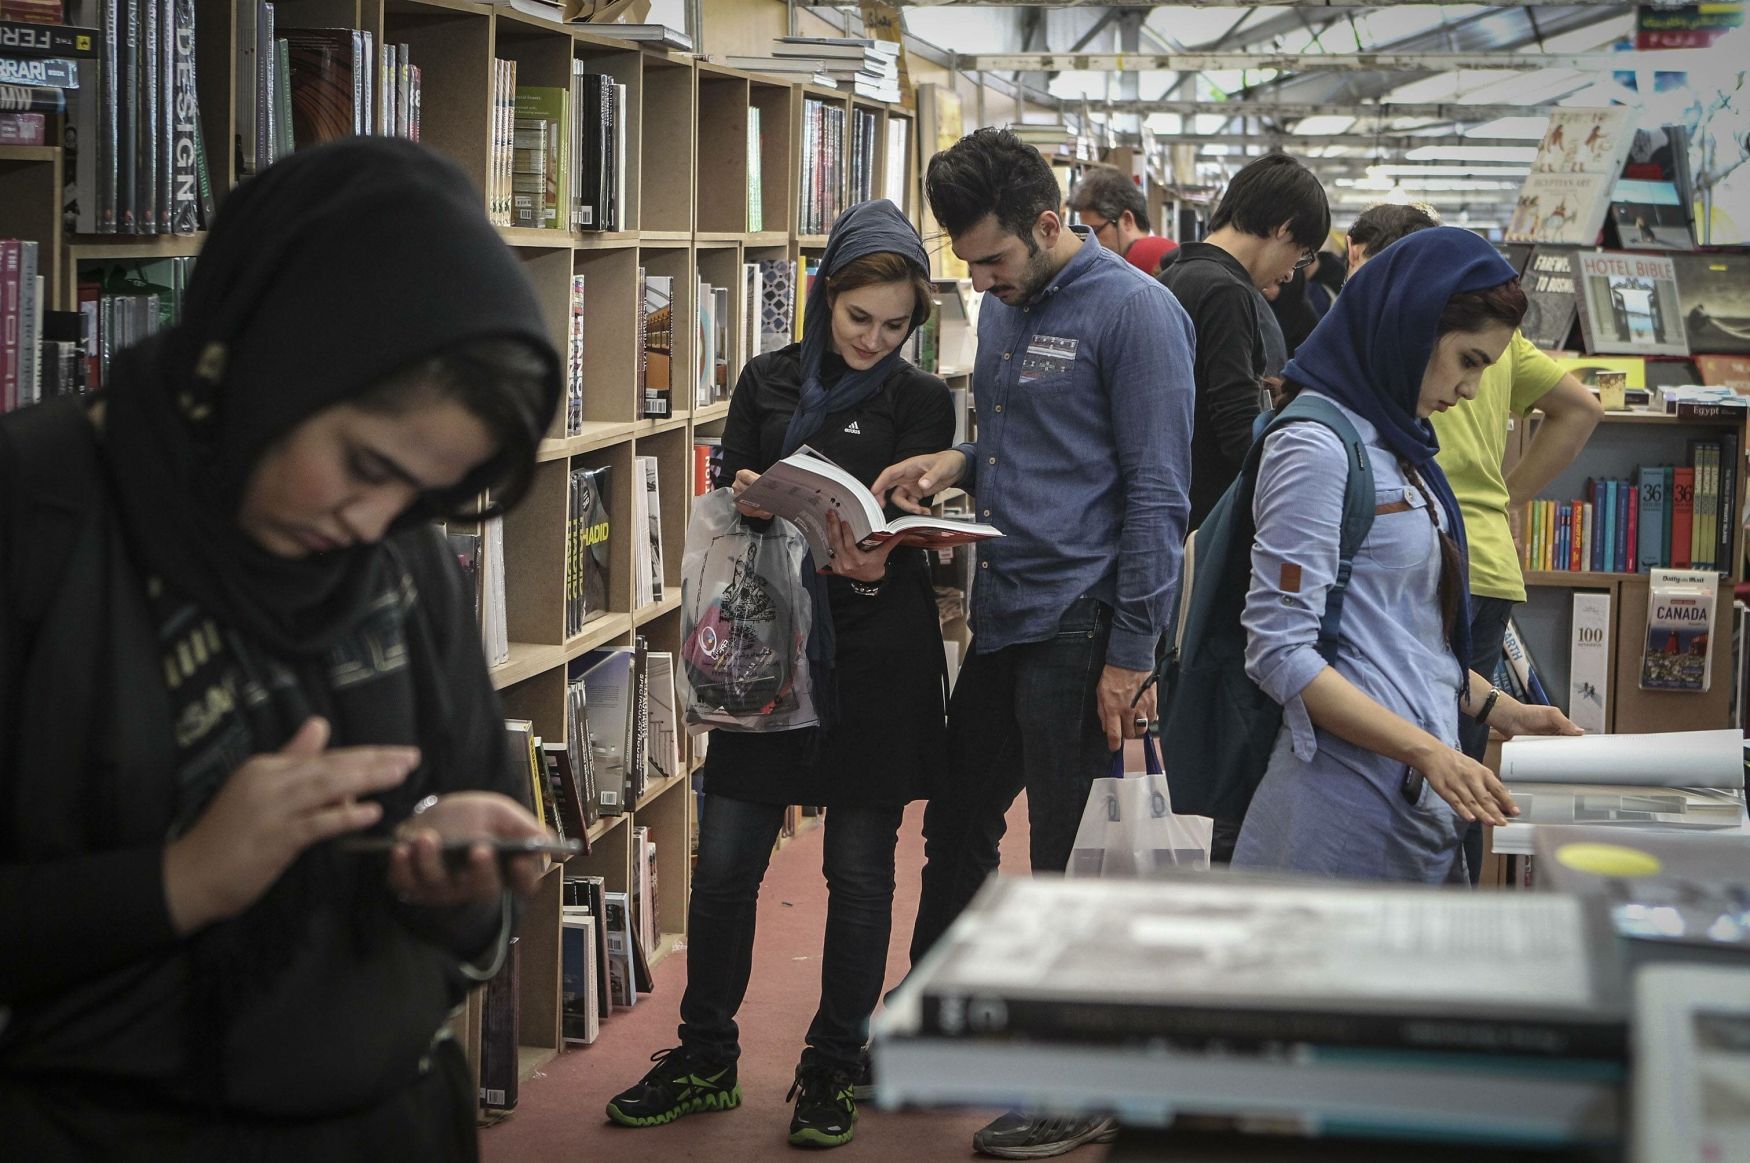 Írán, Teherán, veletrh, knihy, 2015